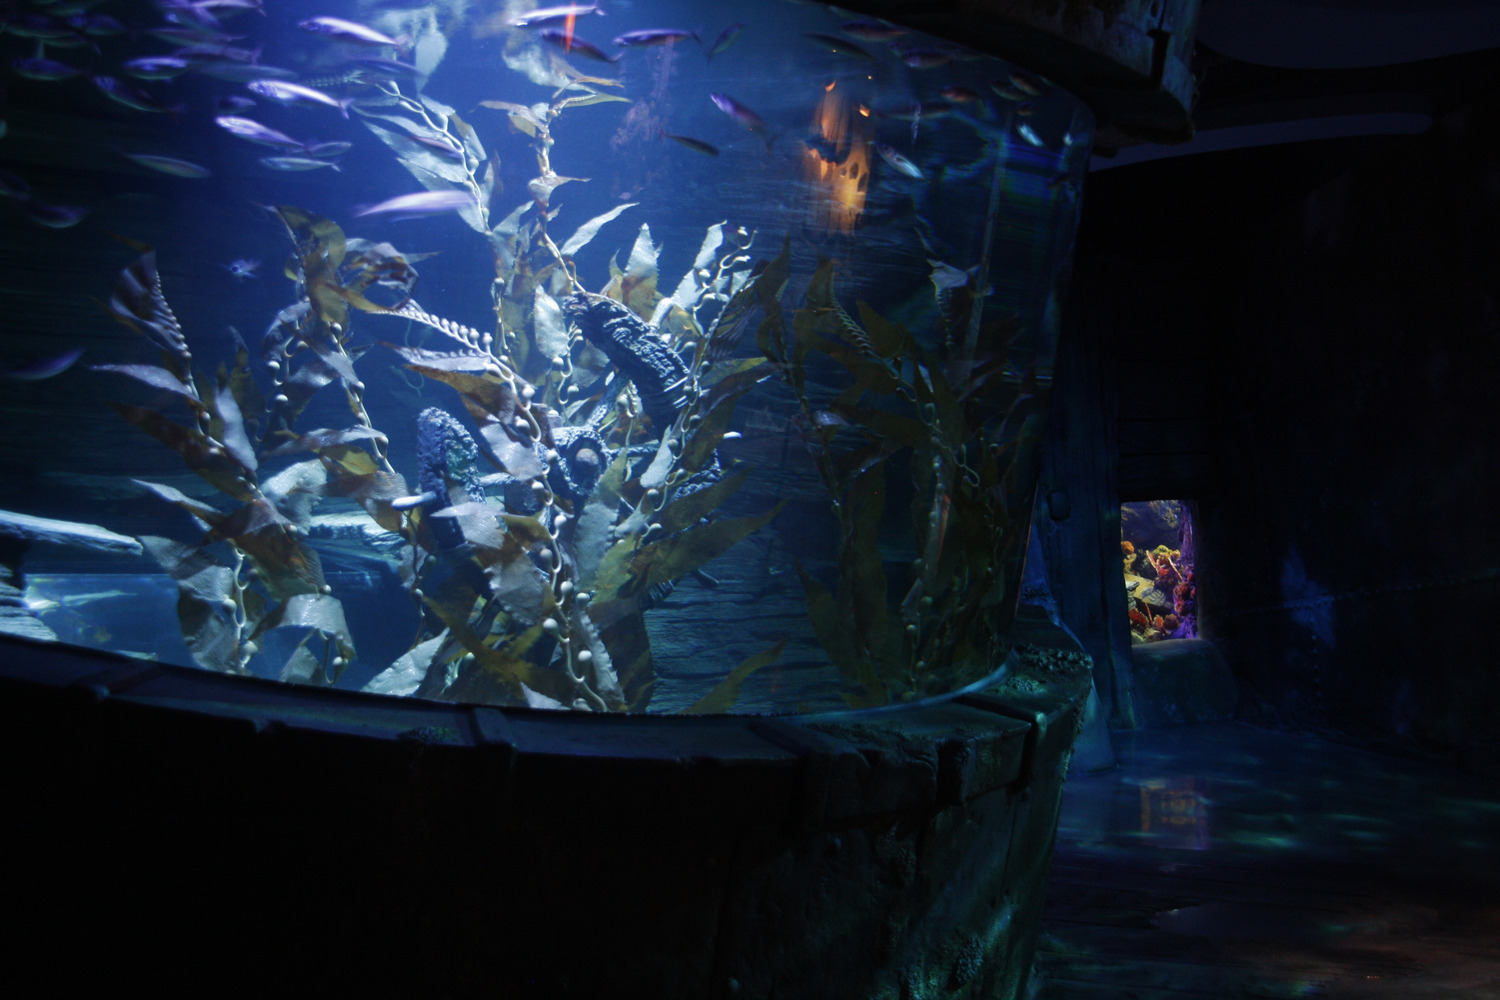 Un aquarium dans un aquarium.